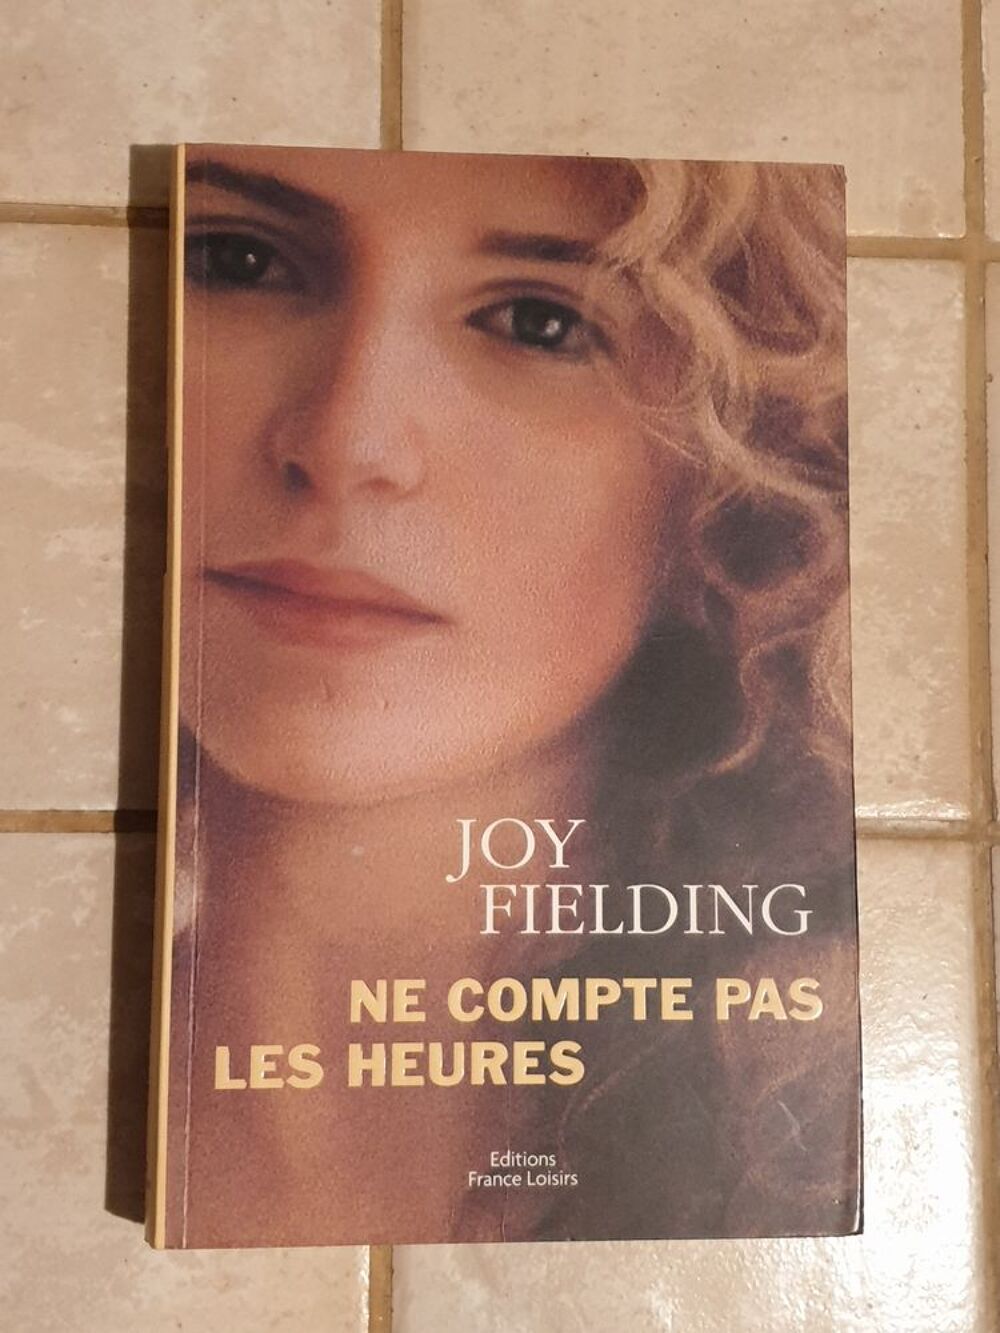 Ne compte pas les heures - Joy Fielding
Marseille 9 eme
Livres et BD